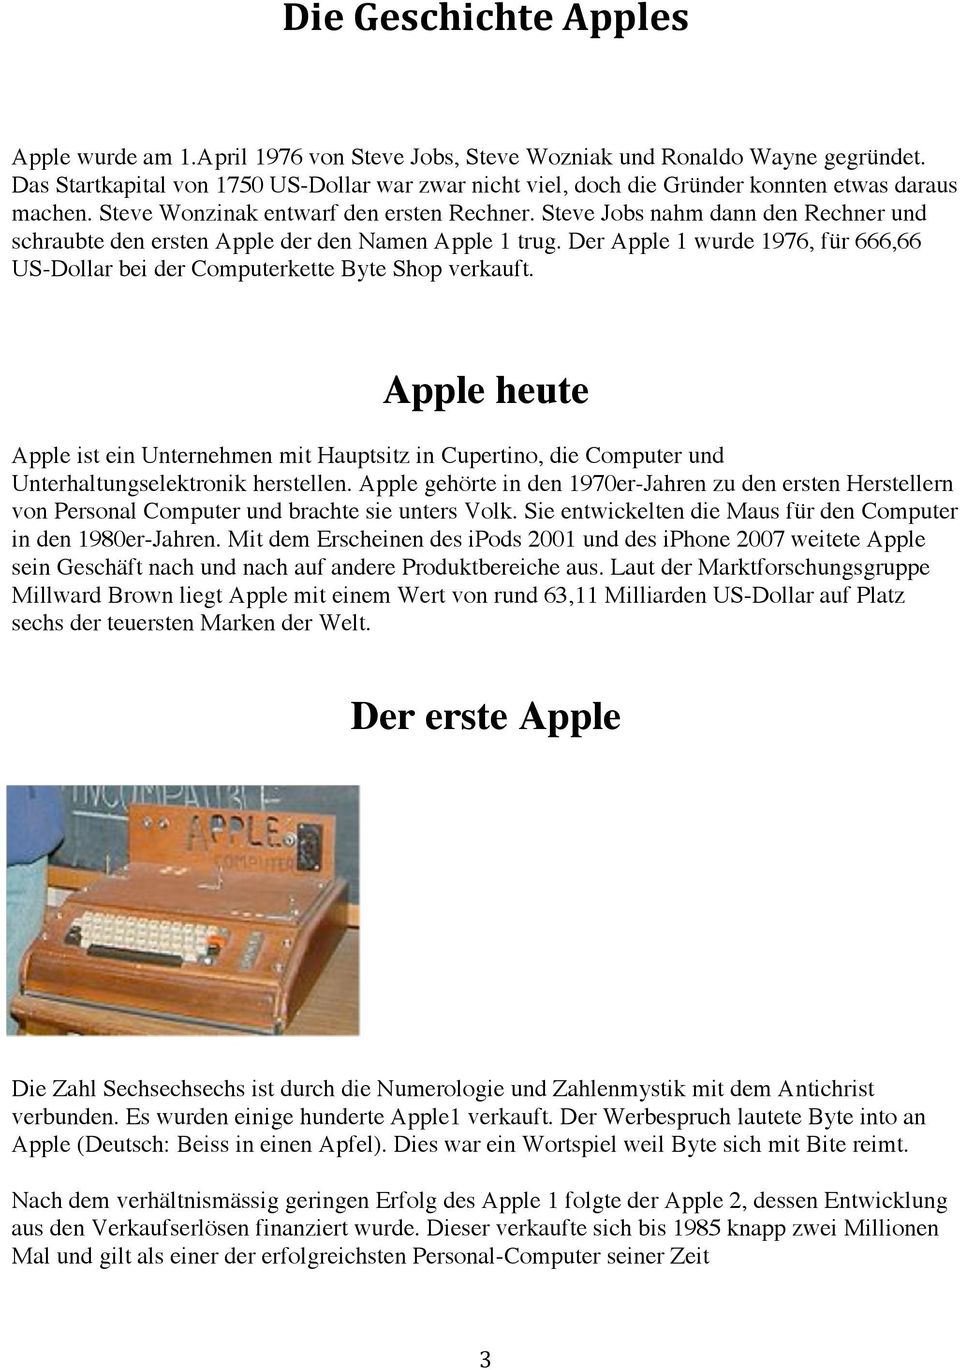 Steve Jobs nahm dann den Rechner und schraubte den ersten Apple der den Namen Apple 1 trug. Der Apple 1 wurde 1976, für 666,66 US-Dollar bei der Computerkette Byte Shop verkauft.